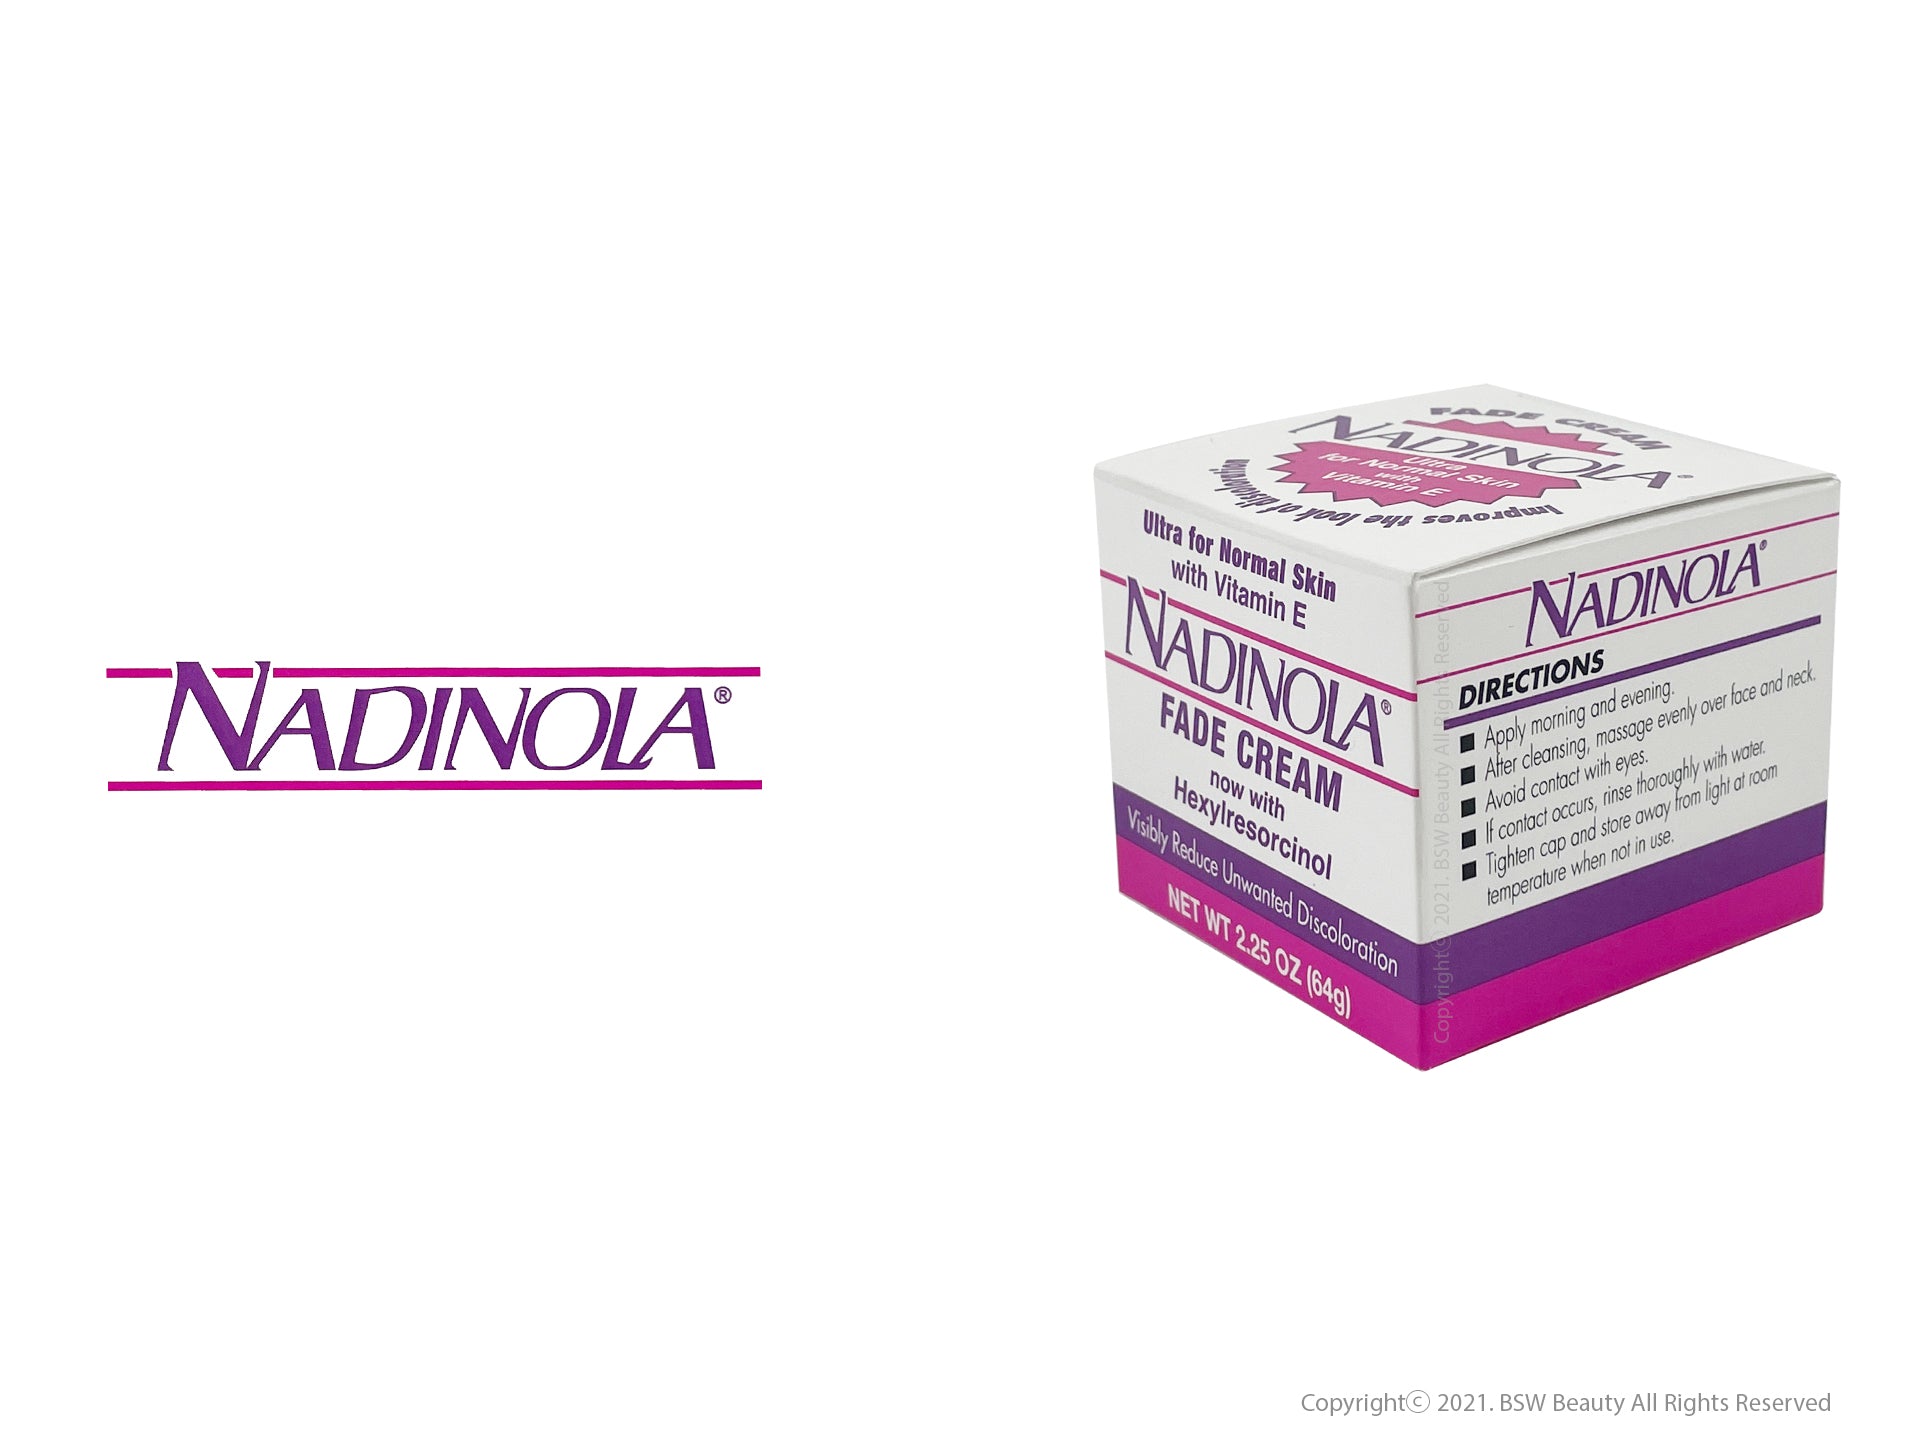 NADINOLA FADE CREAM -  ULTRA FOR NORMAL SKIN WITH VITAMIN E 2.25OZ